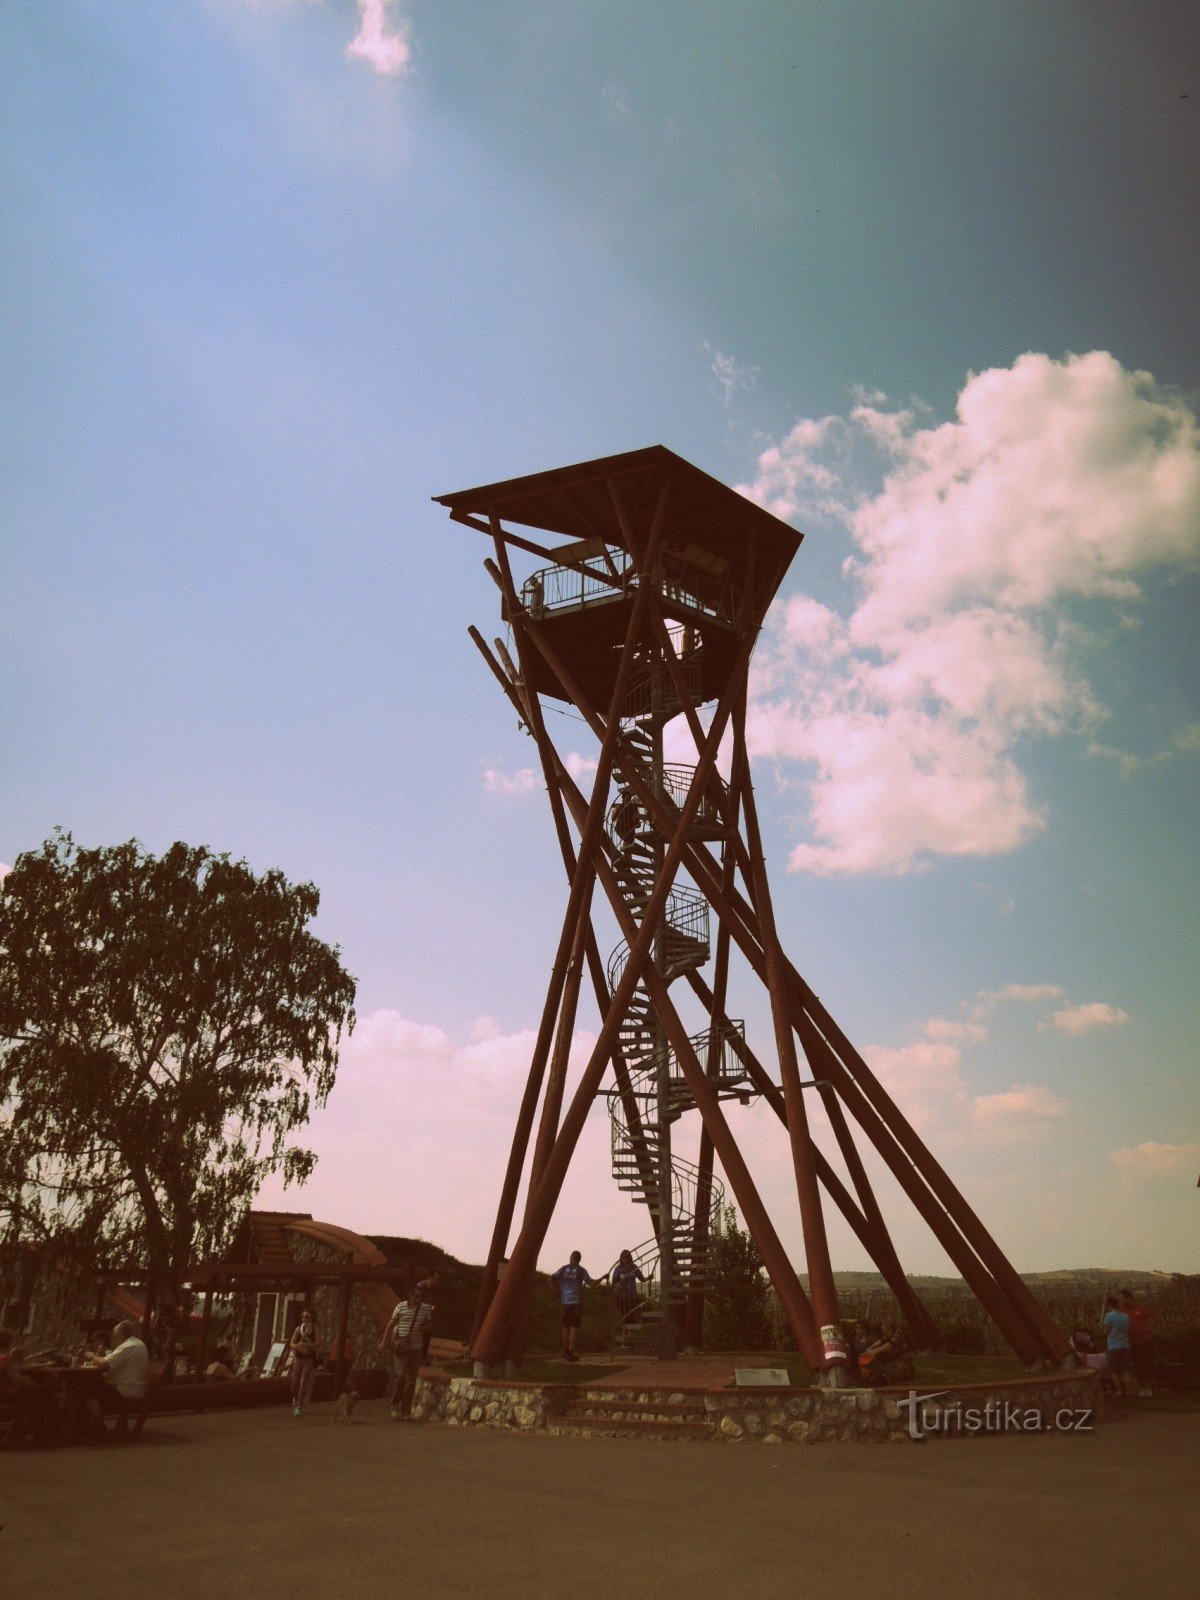 Πύργος επιφυλακής Slunečná κοντά στο Velké Pavlovice